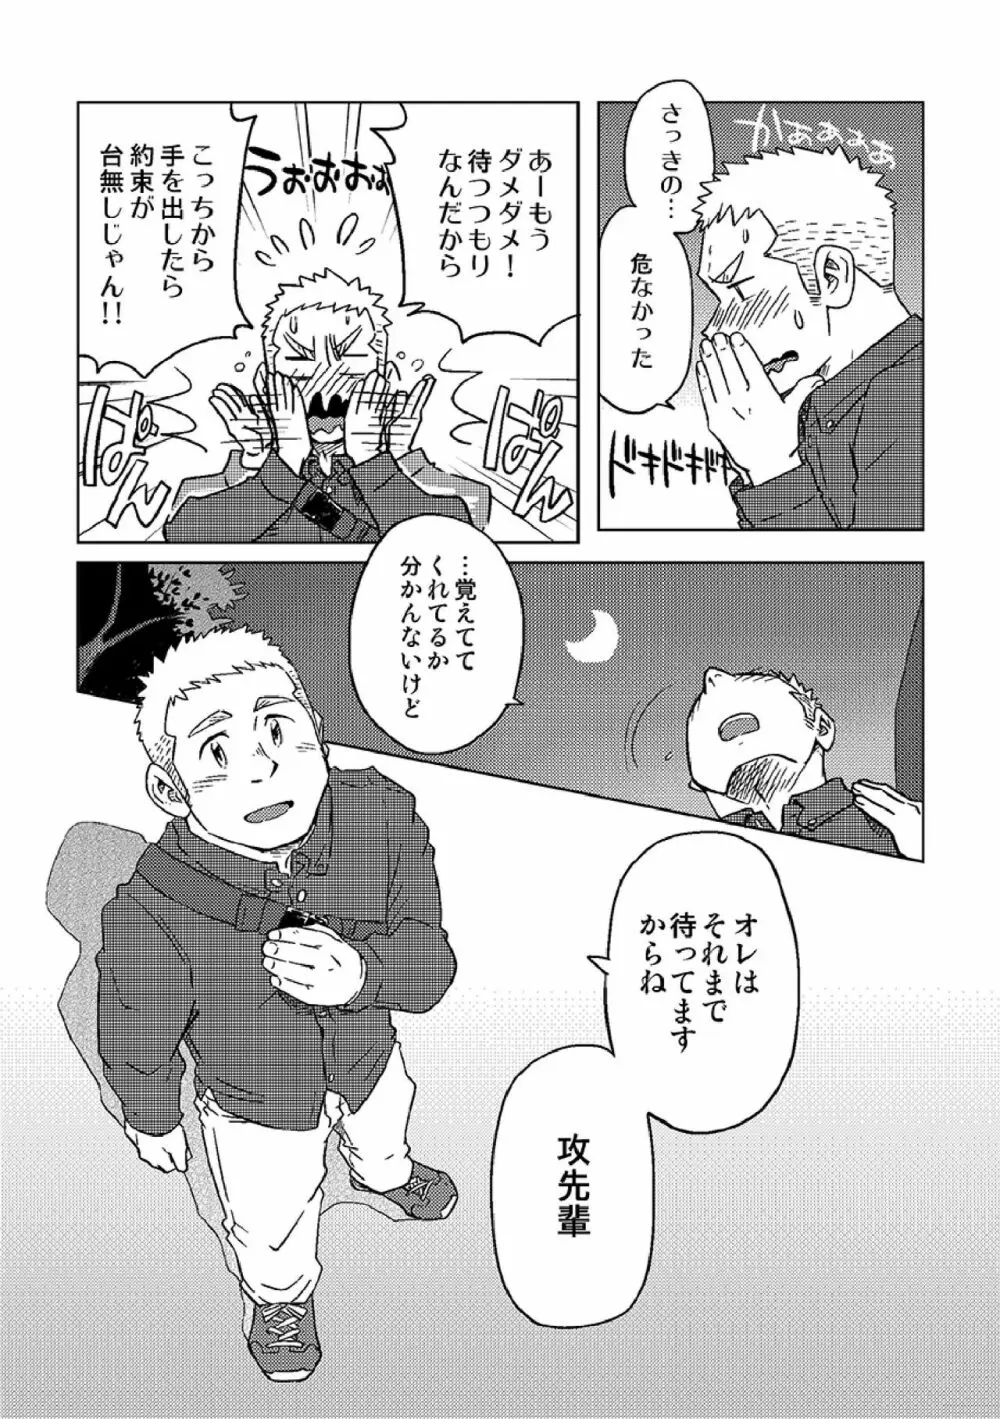 ガチホモ戦士ツナギムーン特別編・月の昇る前に 10ページ